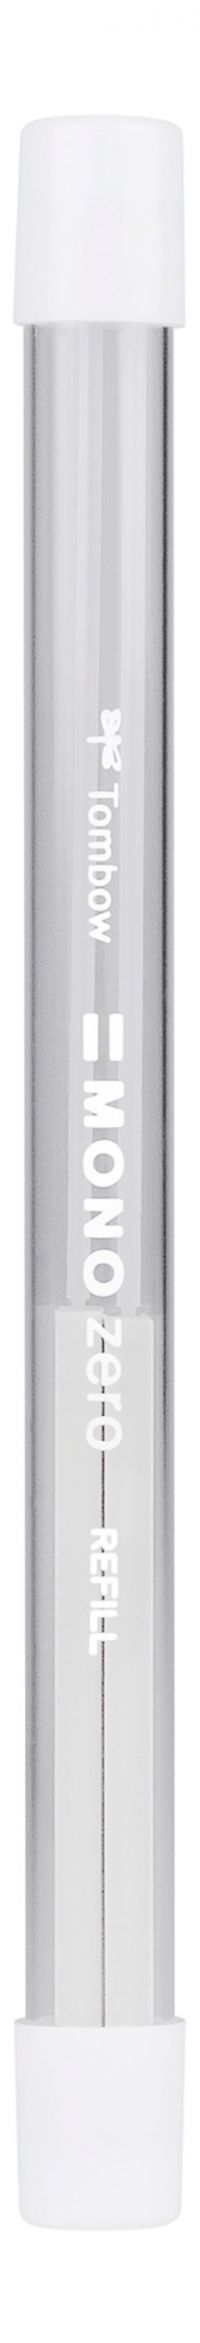 Tombow MONO Zero Refill For Rectangular Tip Eraser Pen White - ER-KUS